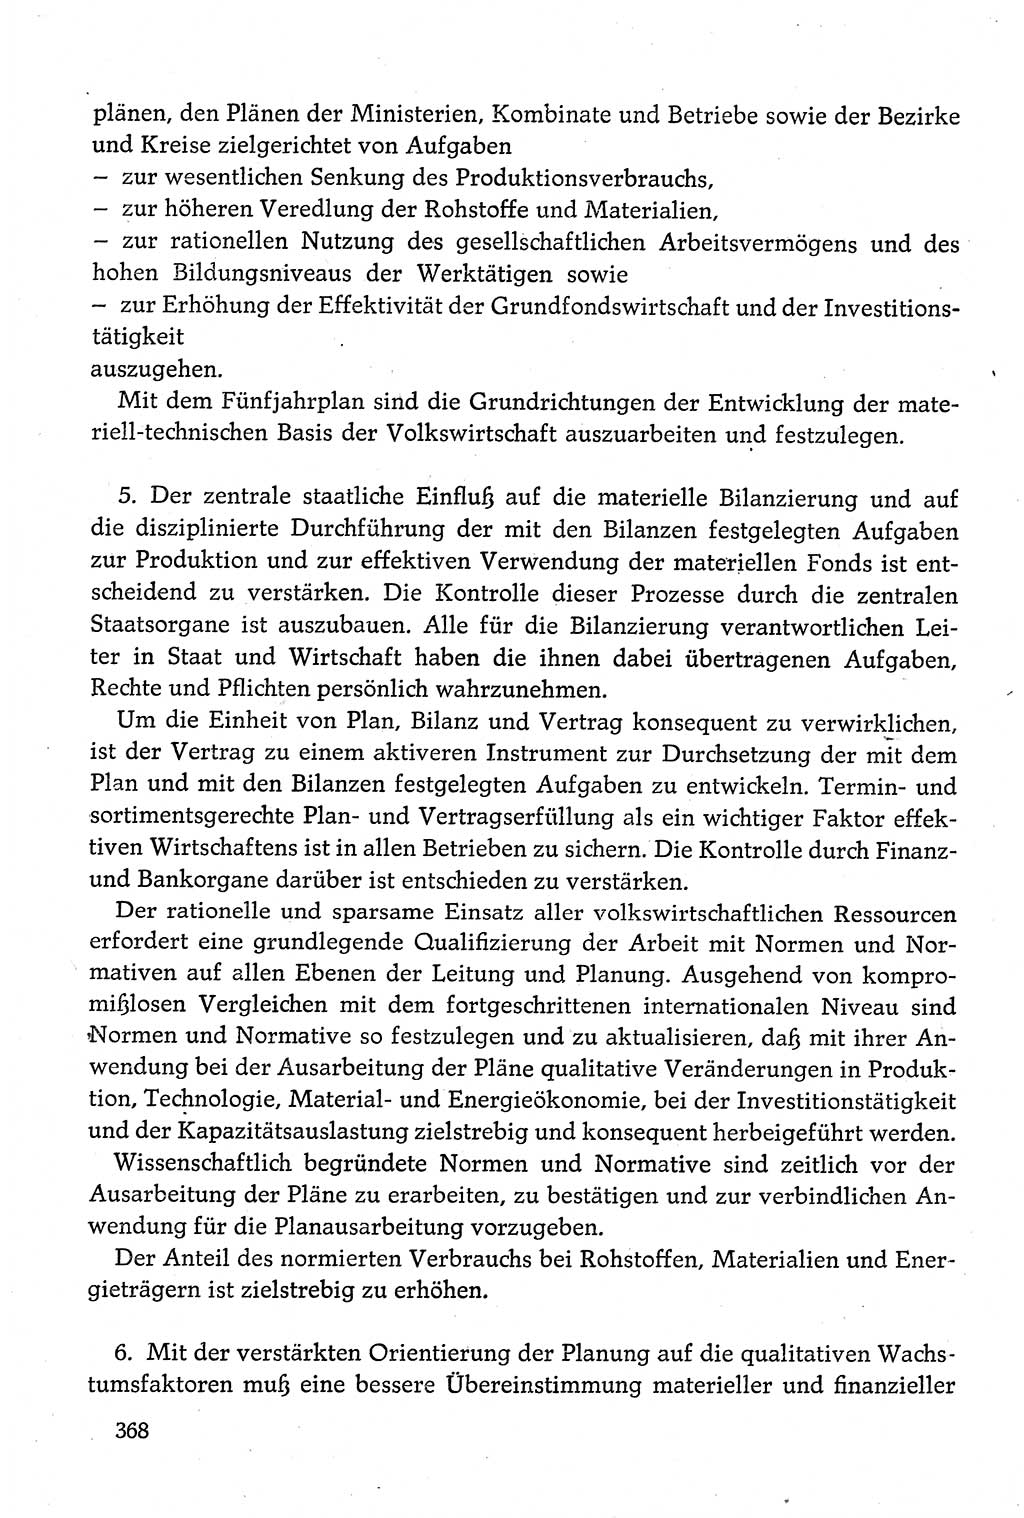 Dokumente der Sozialistischen Einheitspartei Deutschlands (SED) [Deutsche Demokratische Republik (DDR)] 1980-1981, Seite 368 (Dok. SED DDR 1980-1981, S. 368)